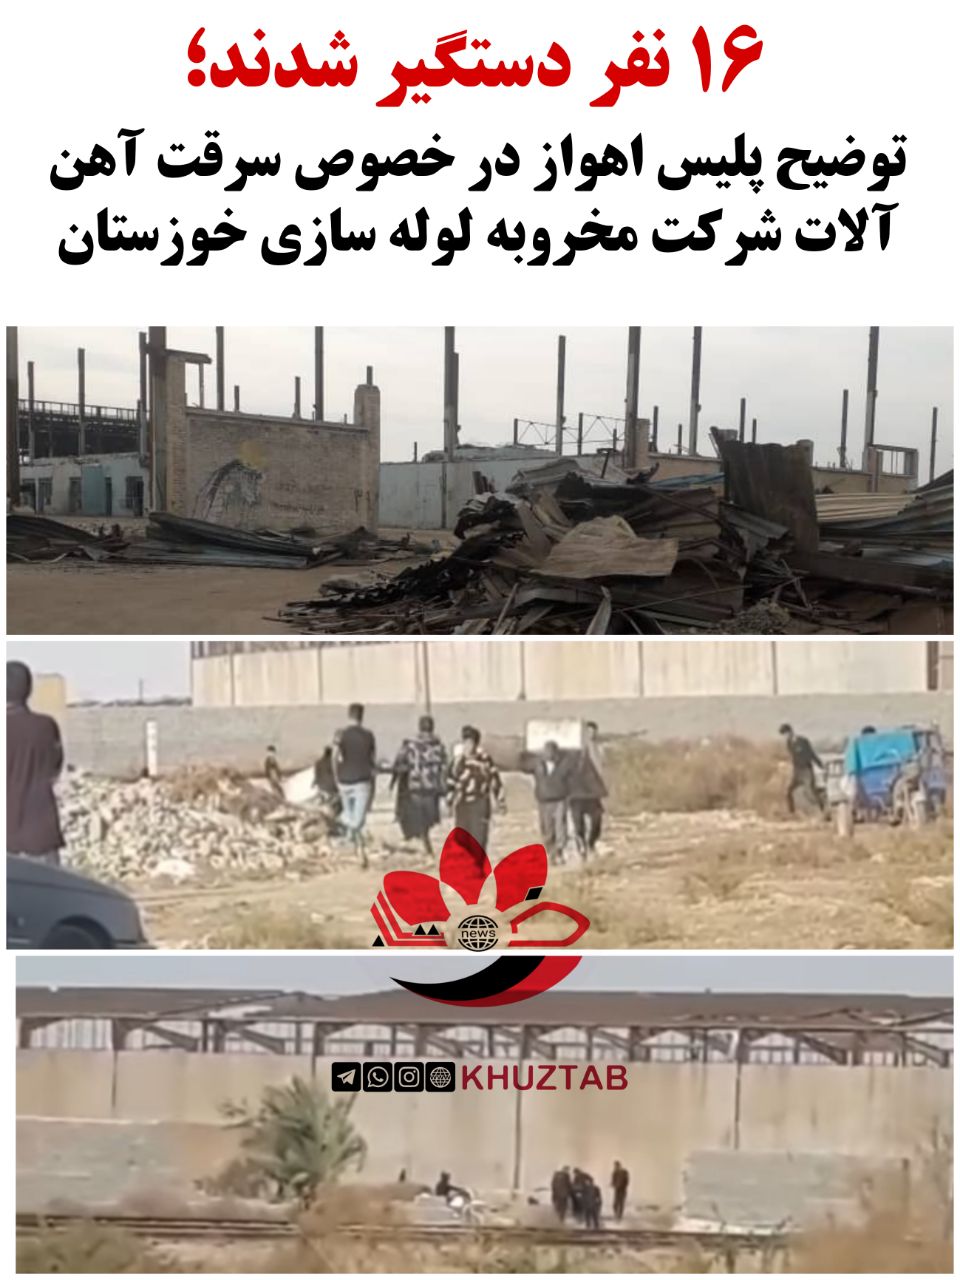 IMG 20220126 191107 244 ۱۶ نفر دستگیر شدند؛ توضیح پلیس اهواز در خصوص سرقت آهن آلات شرکت مخروبه لوله سازی خوزستان